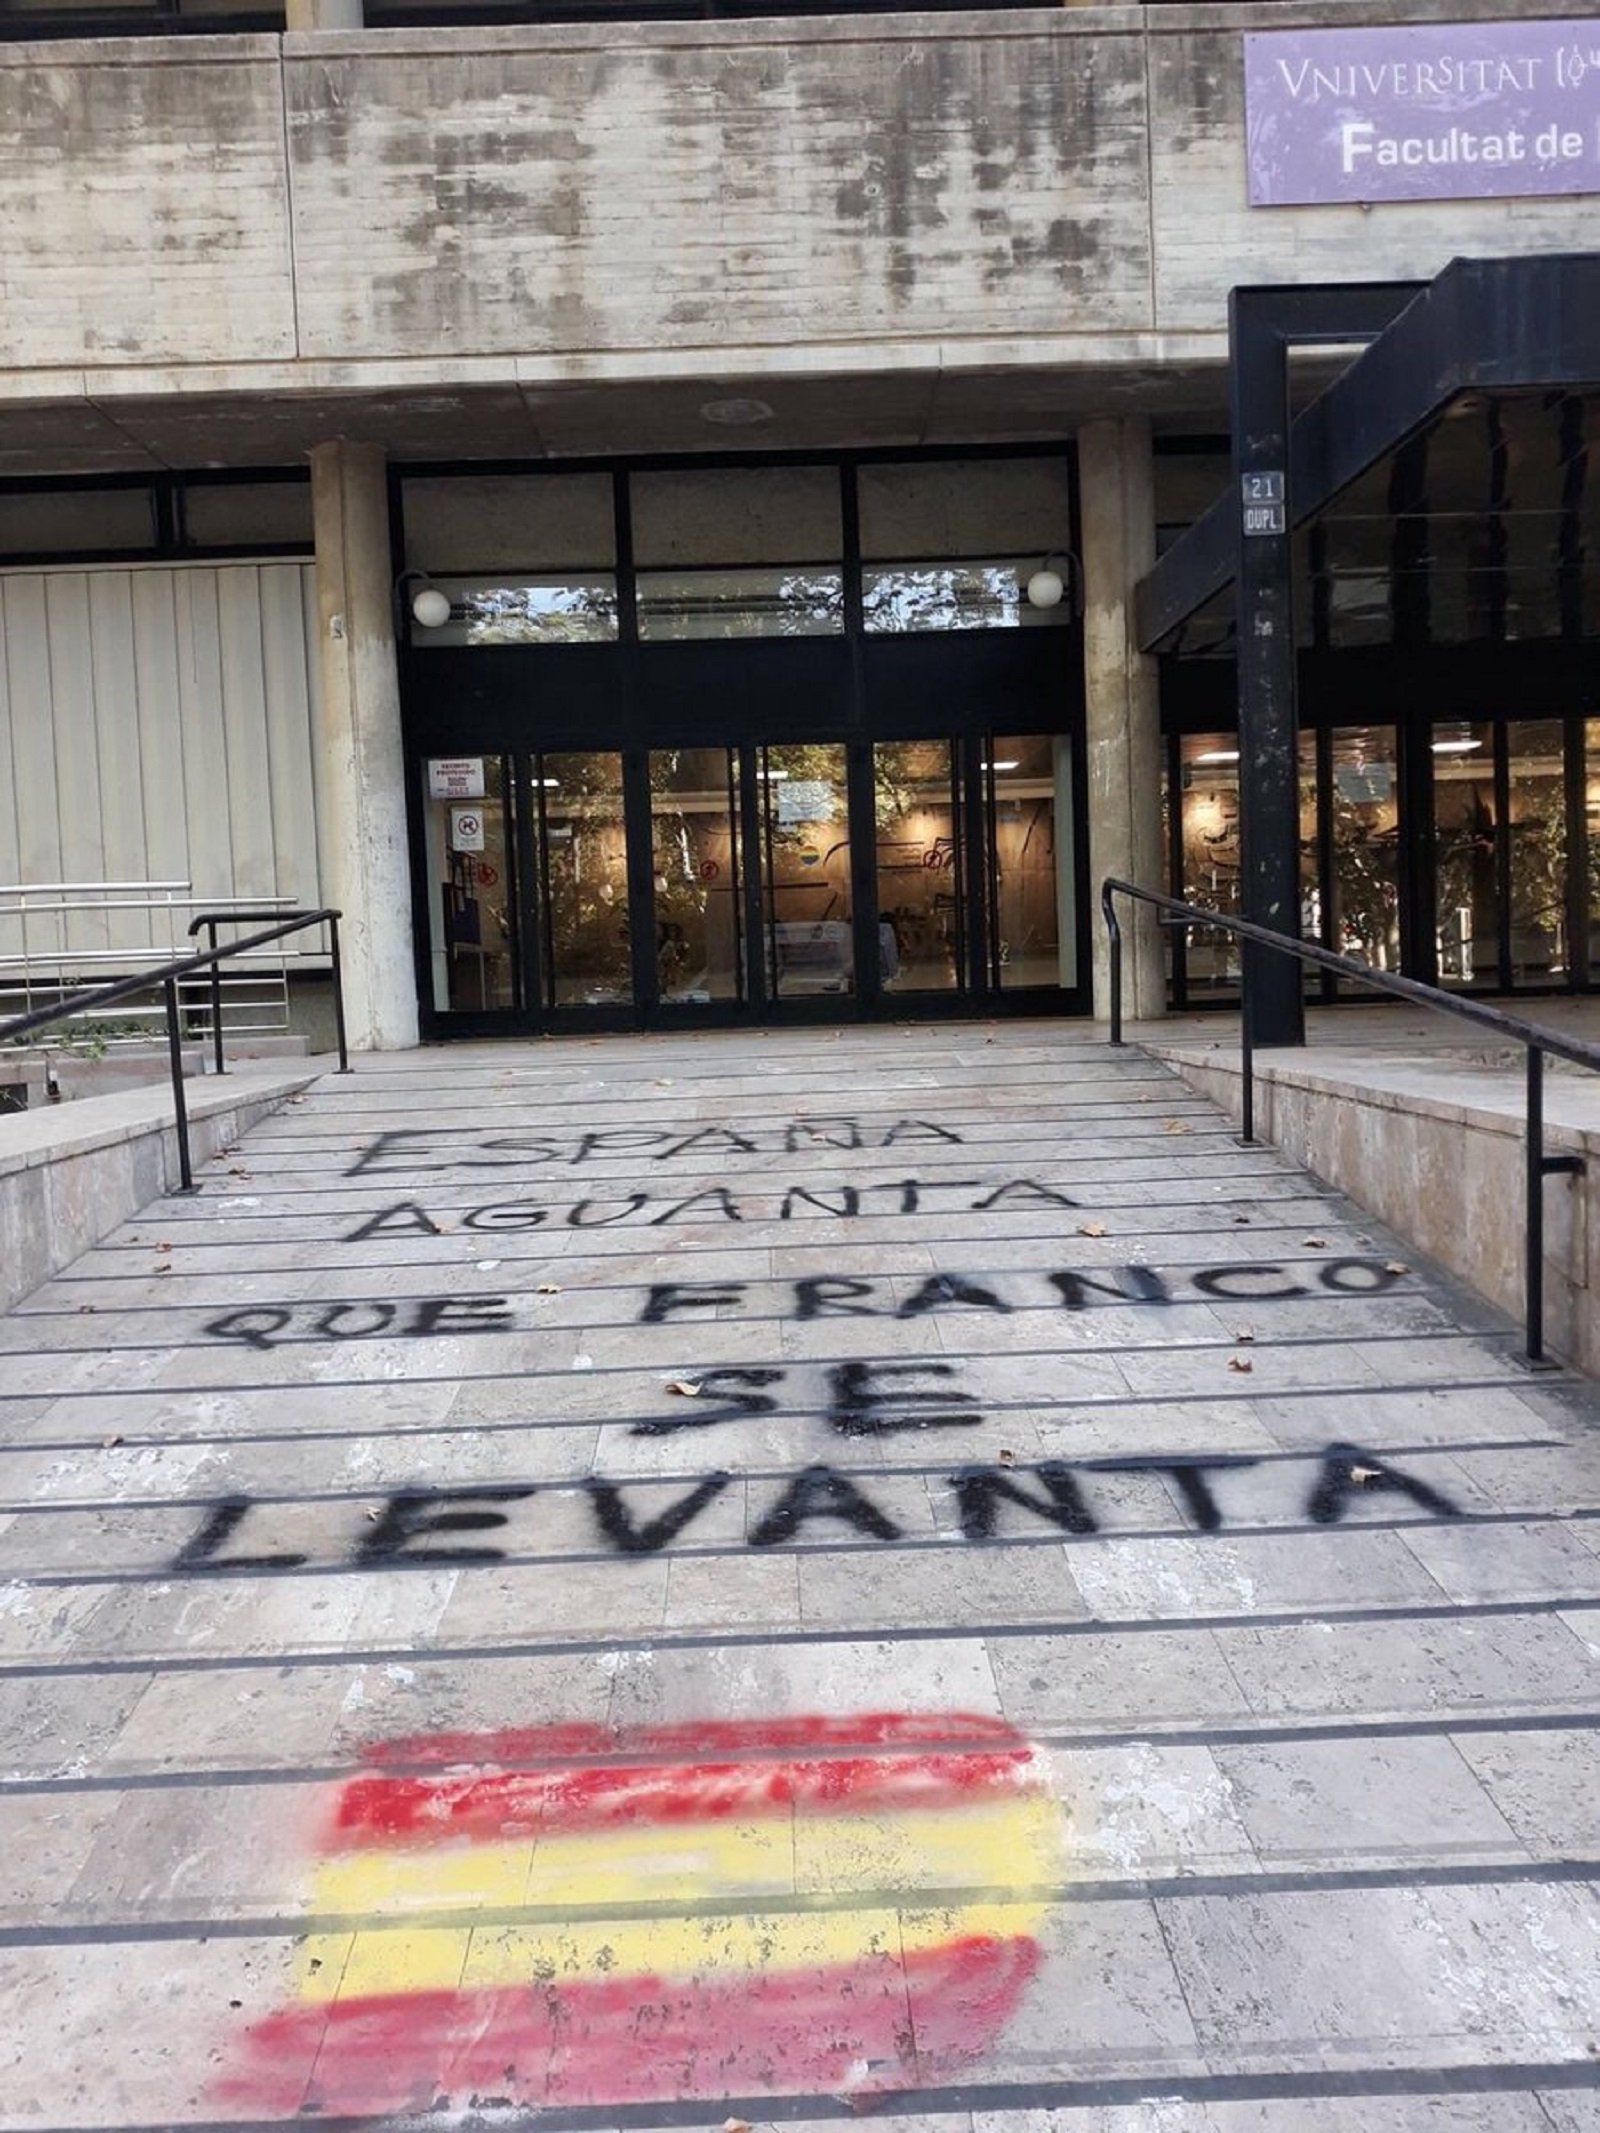 Aparecen pintadas franquistas en la Universitat de València